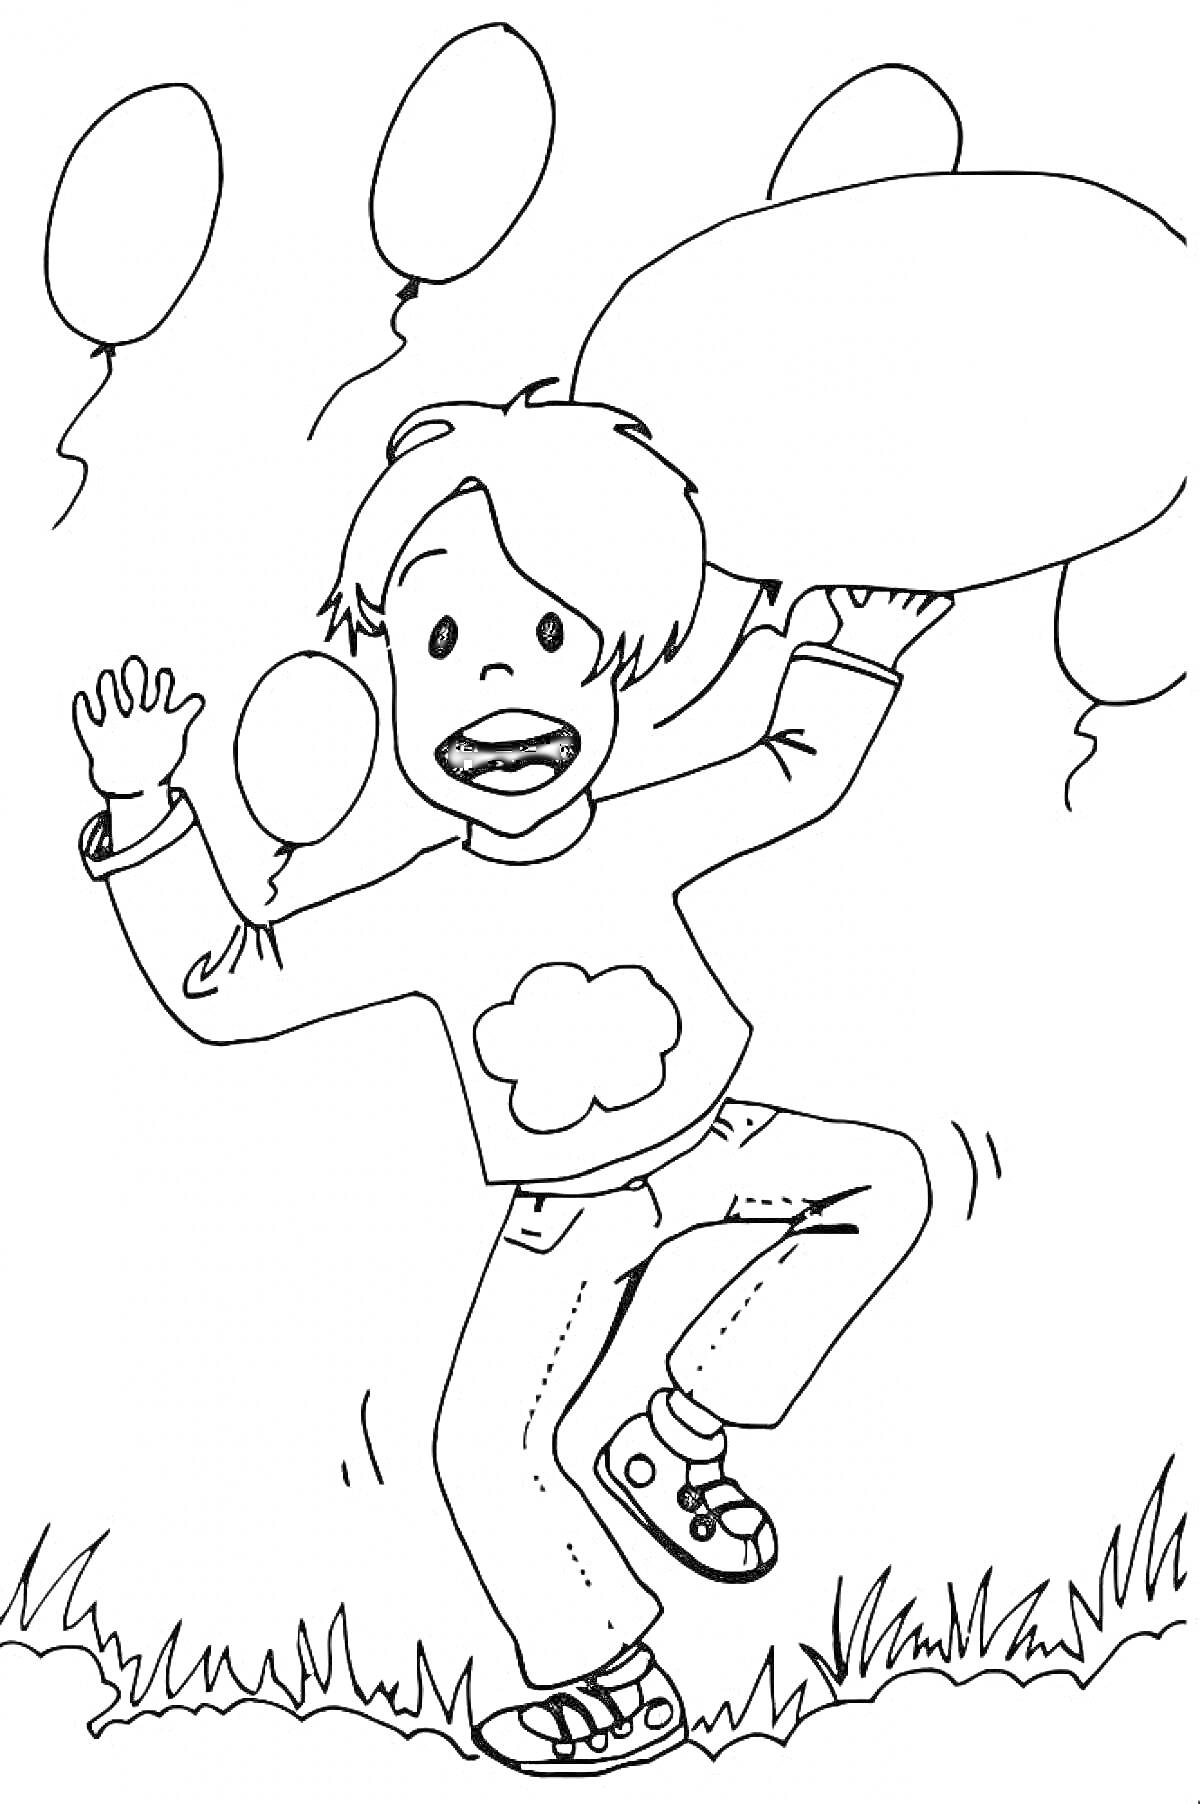 Раскраска Мальчик с воздушными шариками на траве